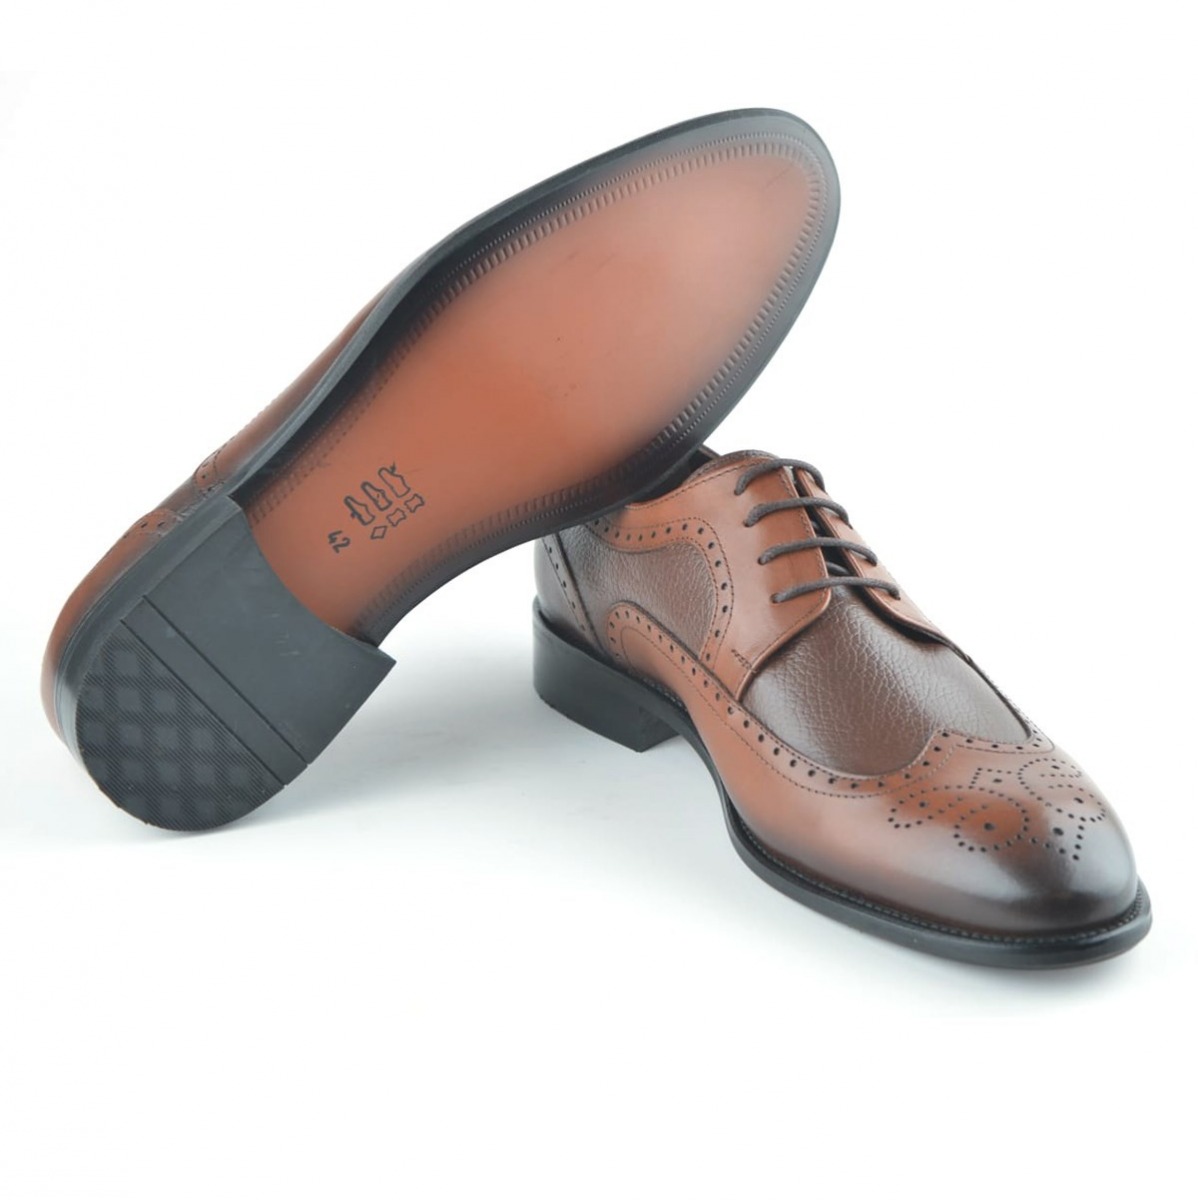 Flo Erkek Deri Klasik Ayakkabı İ20S-191180-4 M 1000 TABA. 5